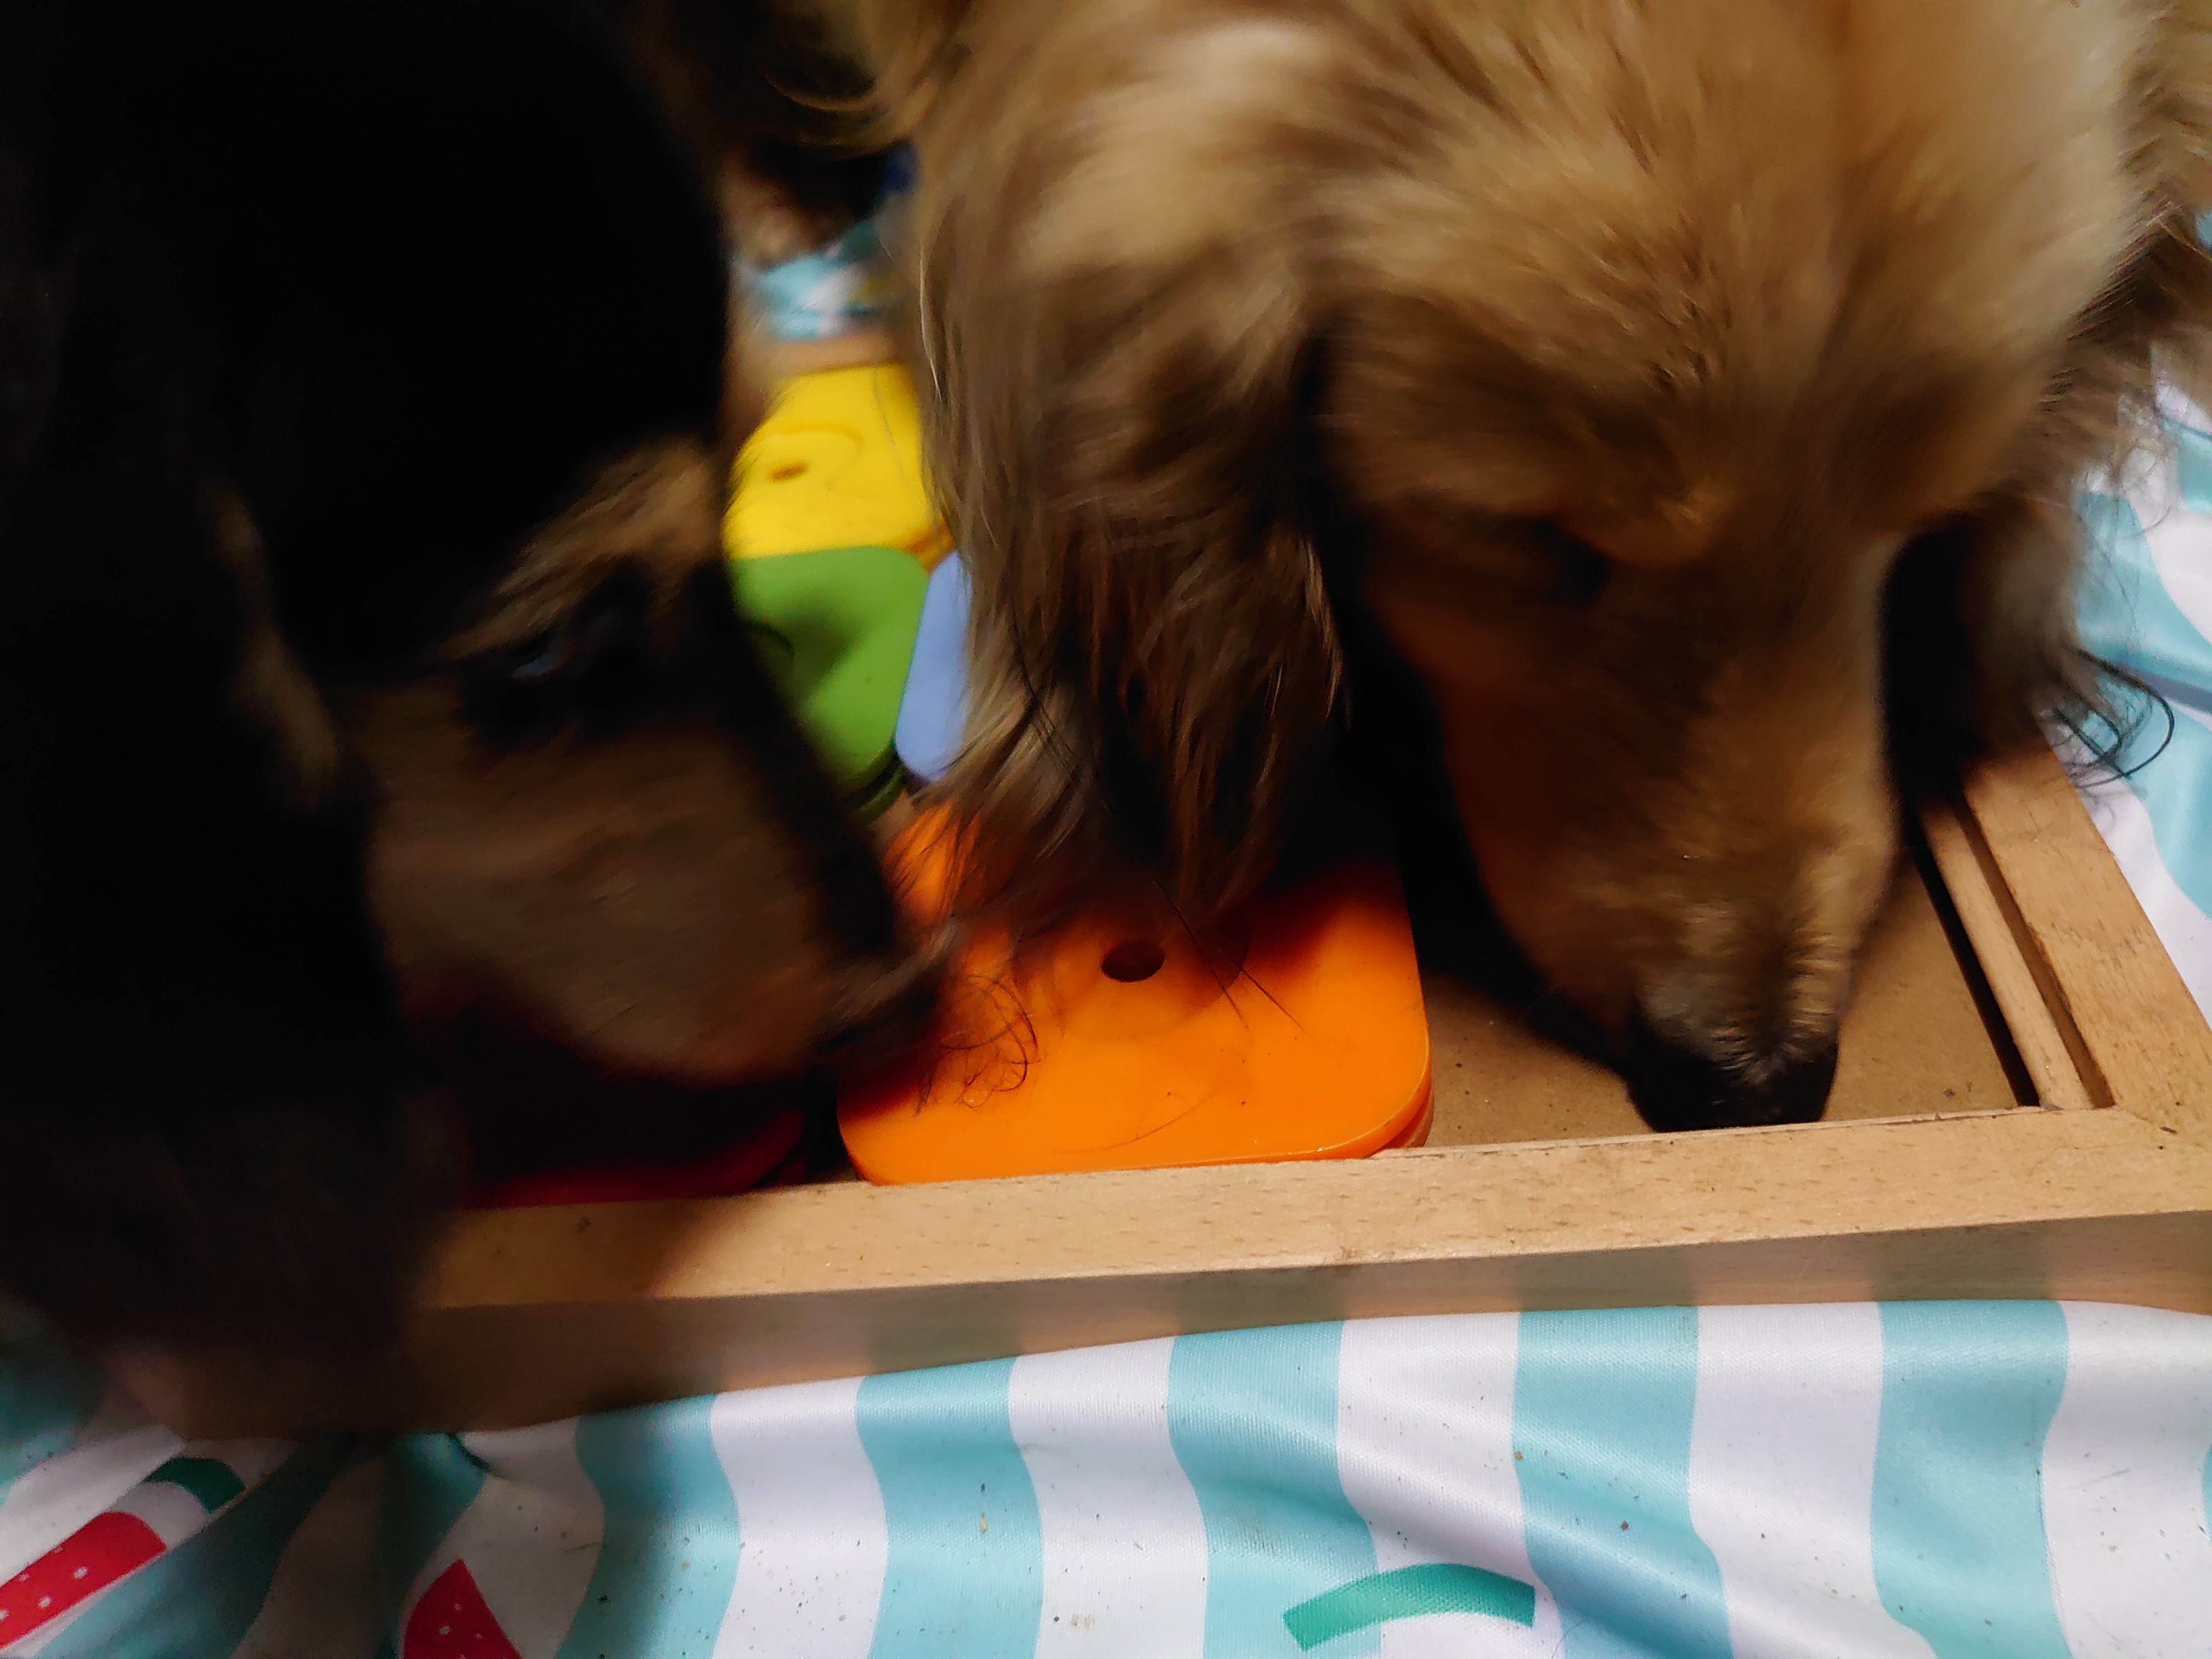 口コミ レビュー Dog Sudoku スライドパズル カラフル 犬用おもちゃ ペット用品の通販サイト ペピイ Peppy